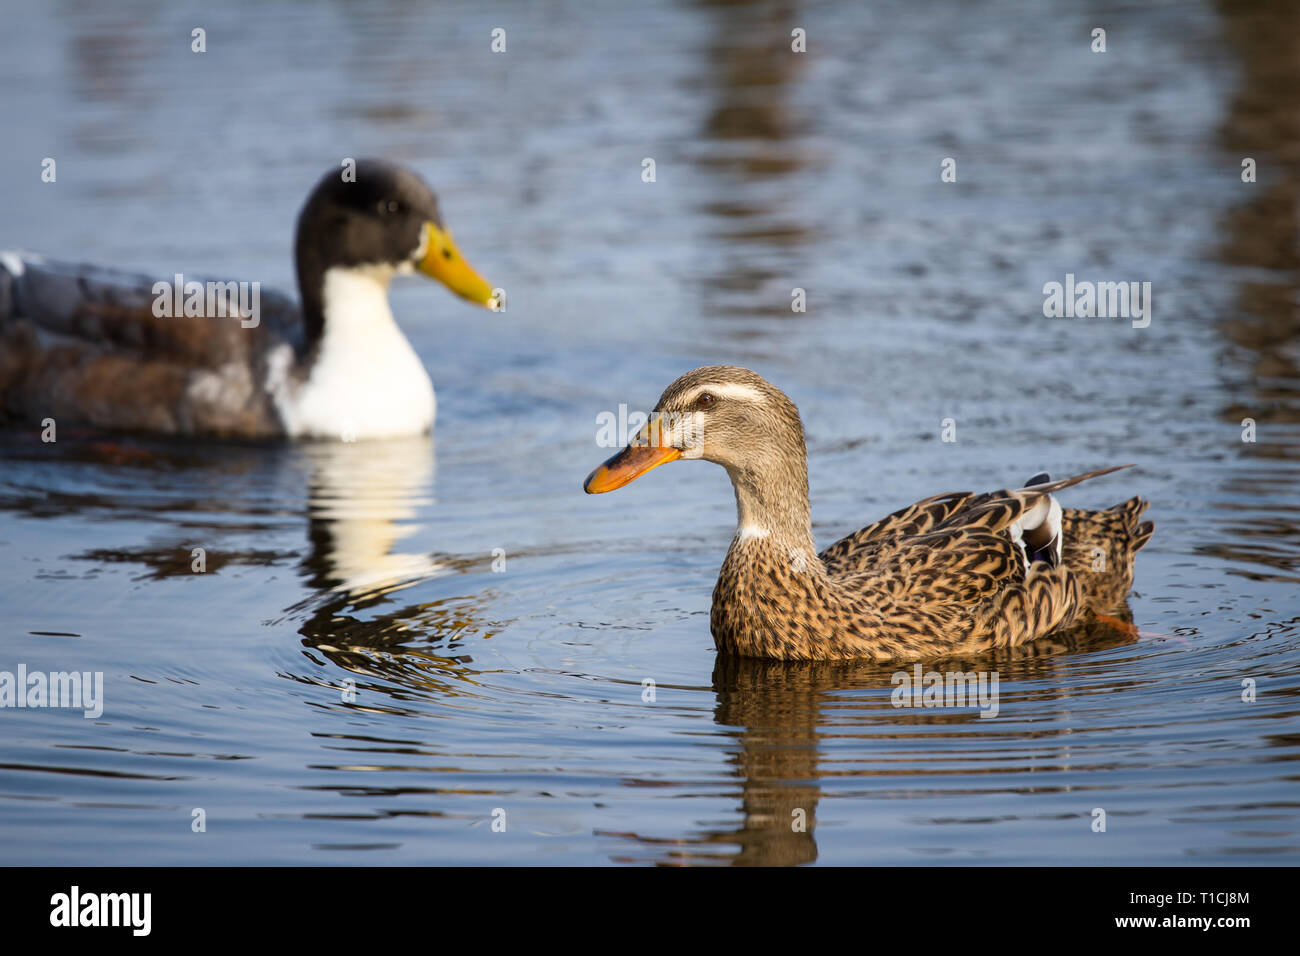 Pair of ducks swimming in the water (Anatidae) Stock Photo